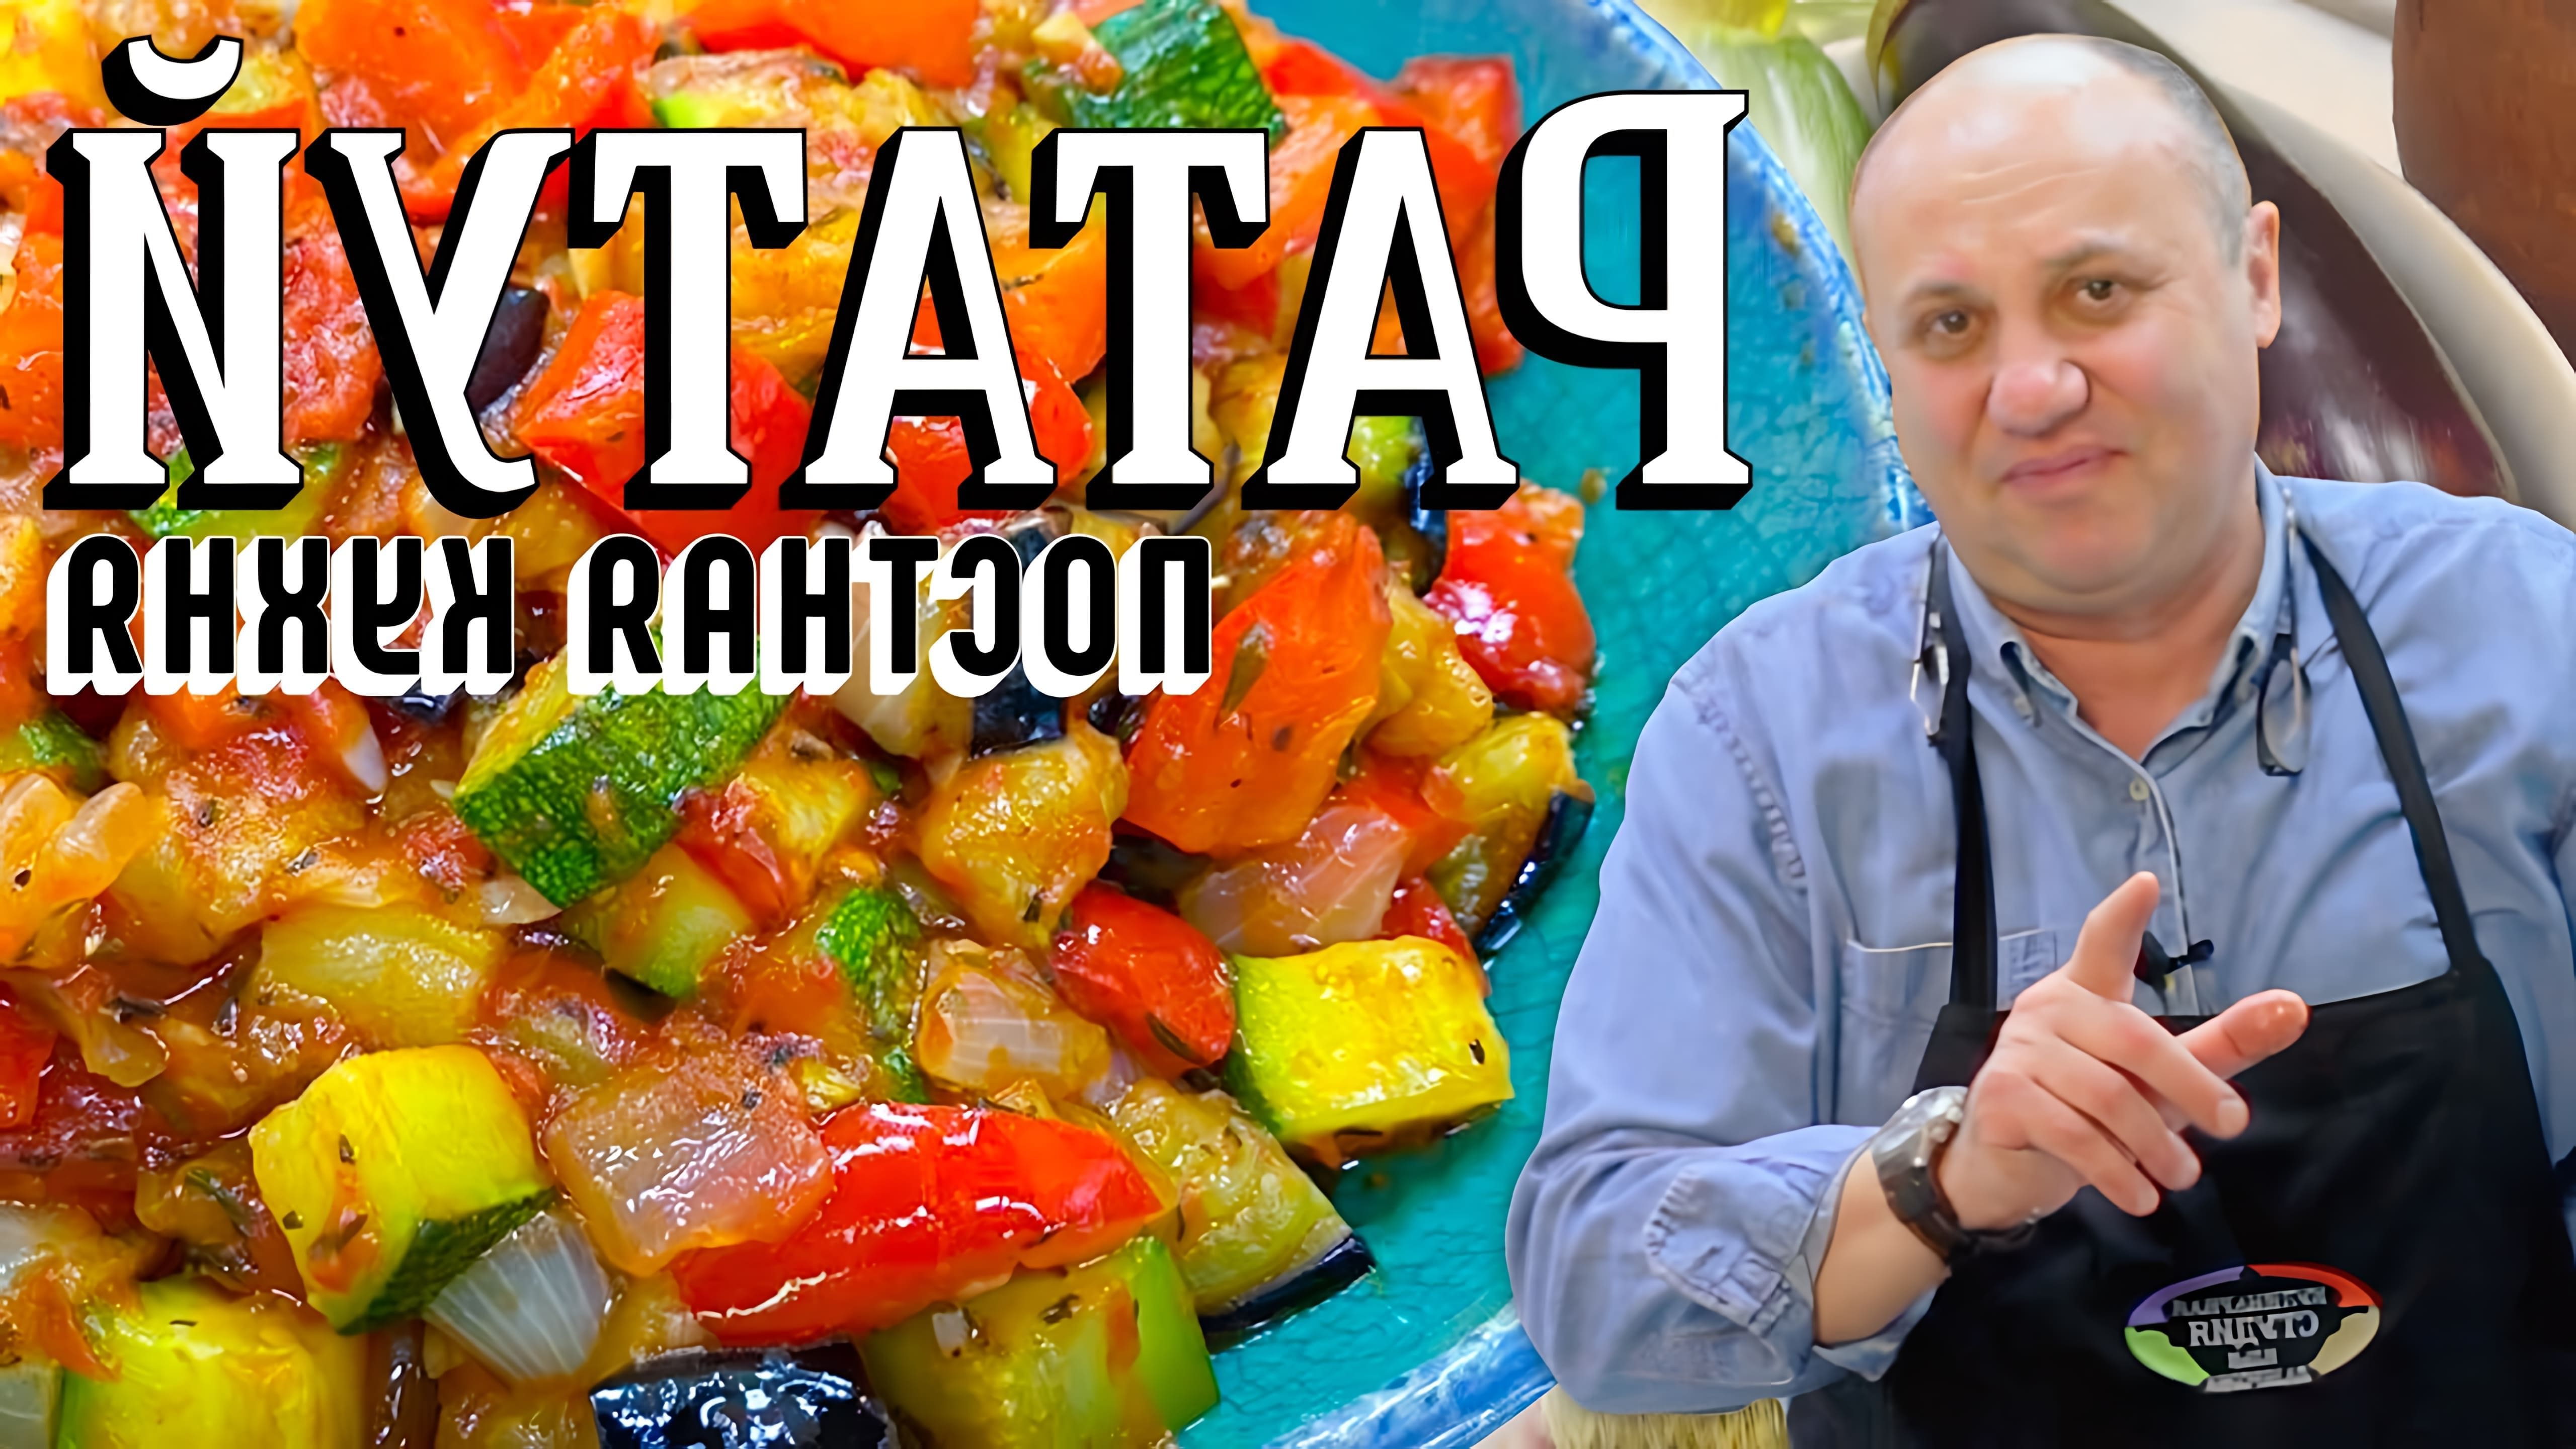 В этом видео демонстрируется рецепт рататуя, традиционного овощного блюда французской кухни